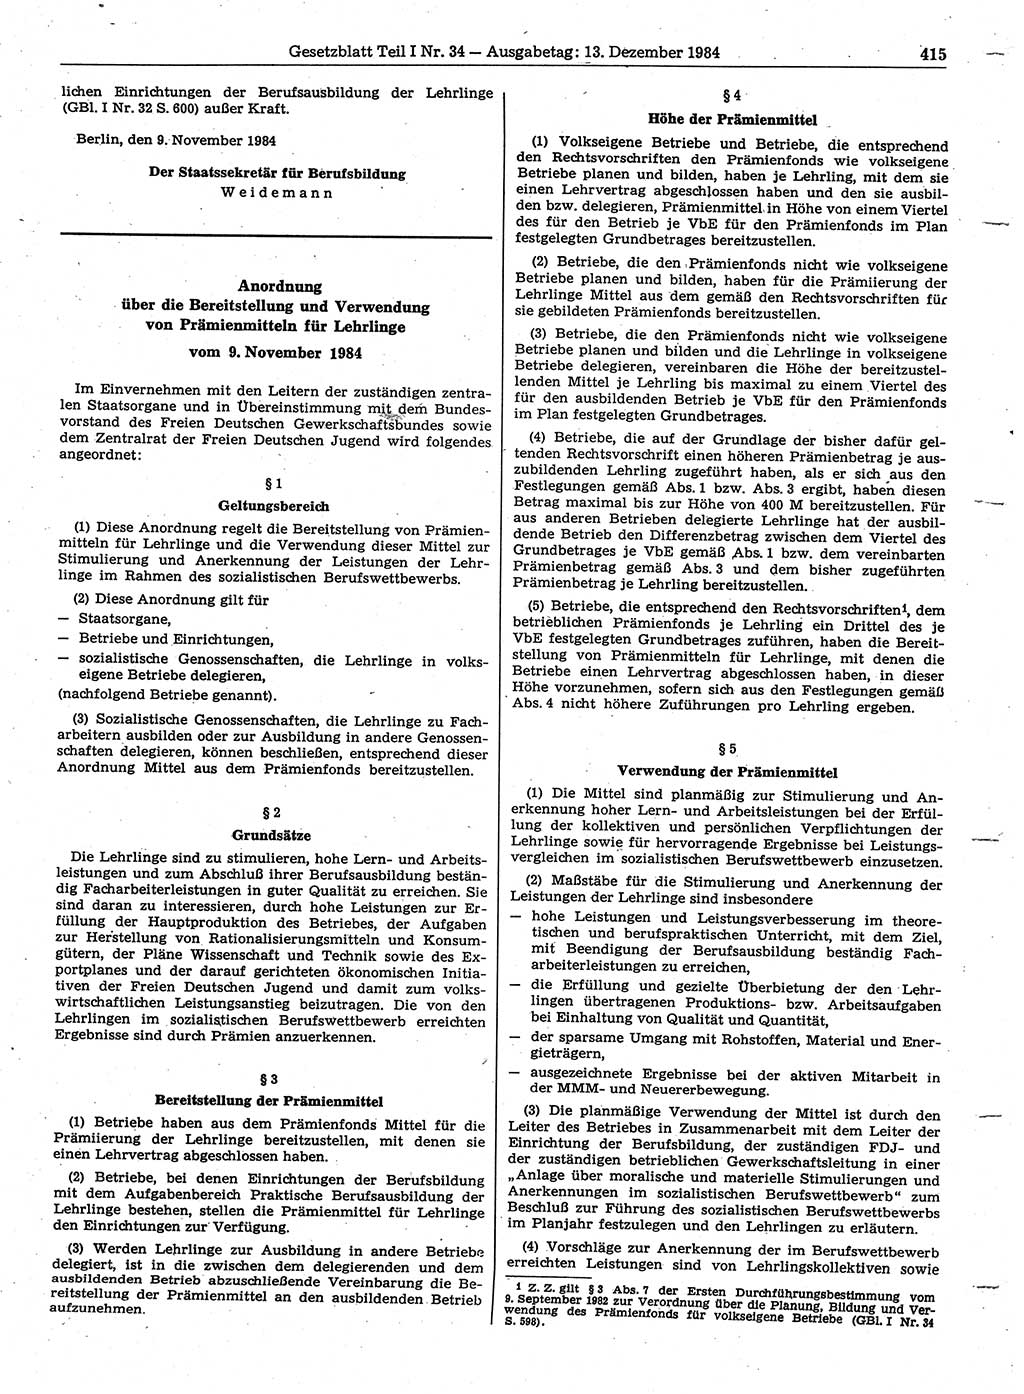 Gesetzblatt (GBl.) der Deutschen Demokratischen Republik (DDR) Teil Ⅰ 1984, Seite 415 (GBl. DDR Ⅰ 1984, S. 415)